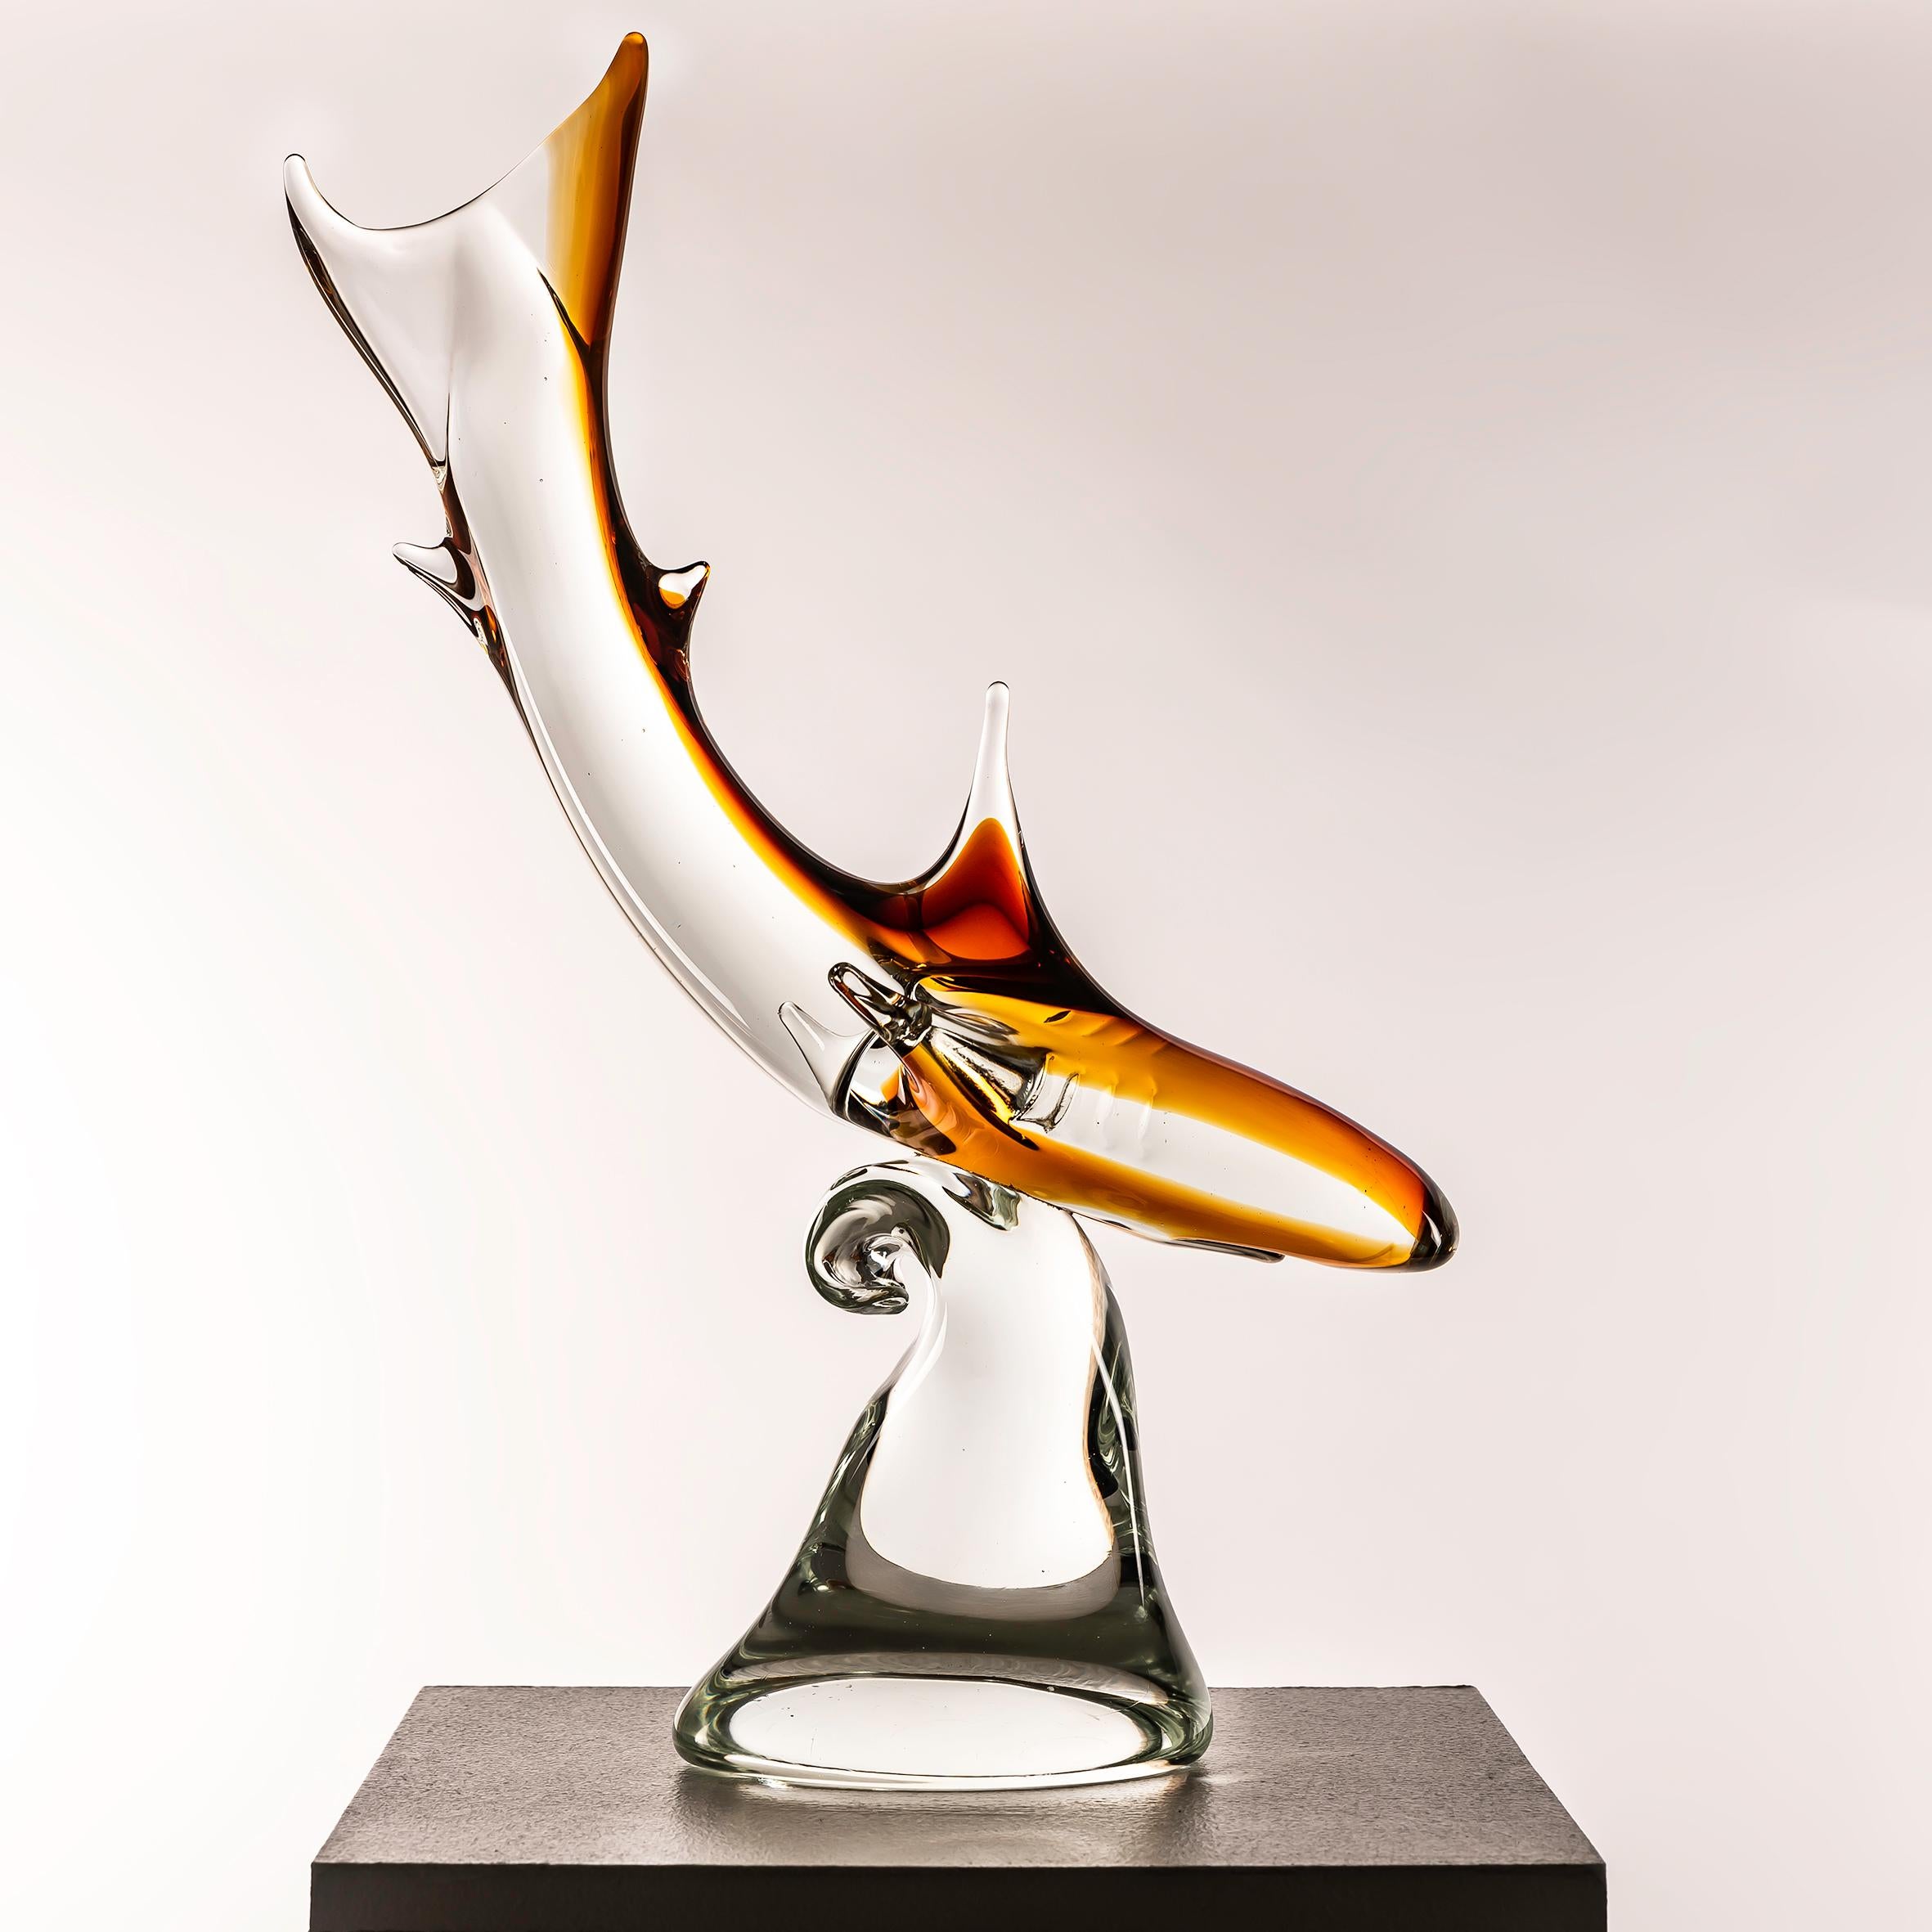 Cette sculpture de requin en verre de Murano datant des années 1960, fabriquée avec du verre orange et clair vibrant, offre un mélange convaincant de maîtrise artistique et d'attrait esthétique. Réputés pour leur tradition séculaire d'excellence en